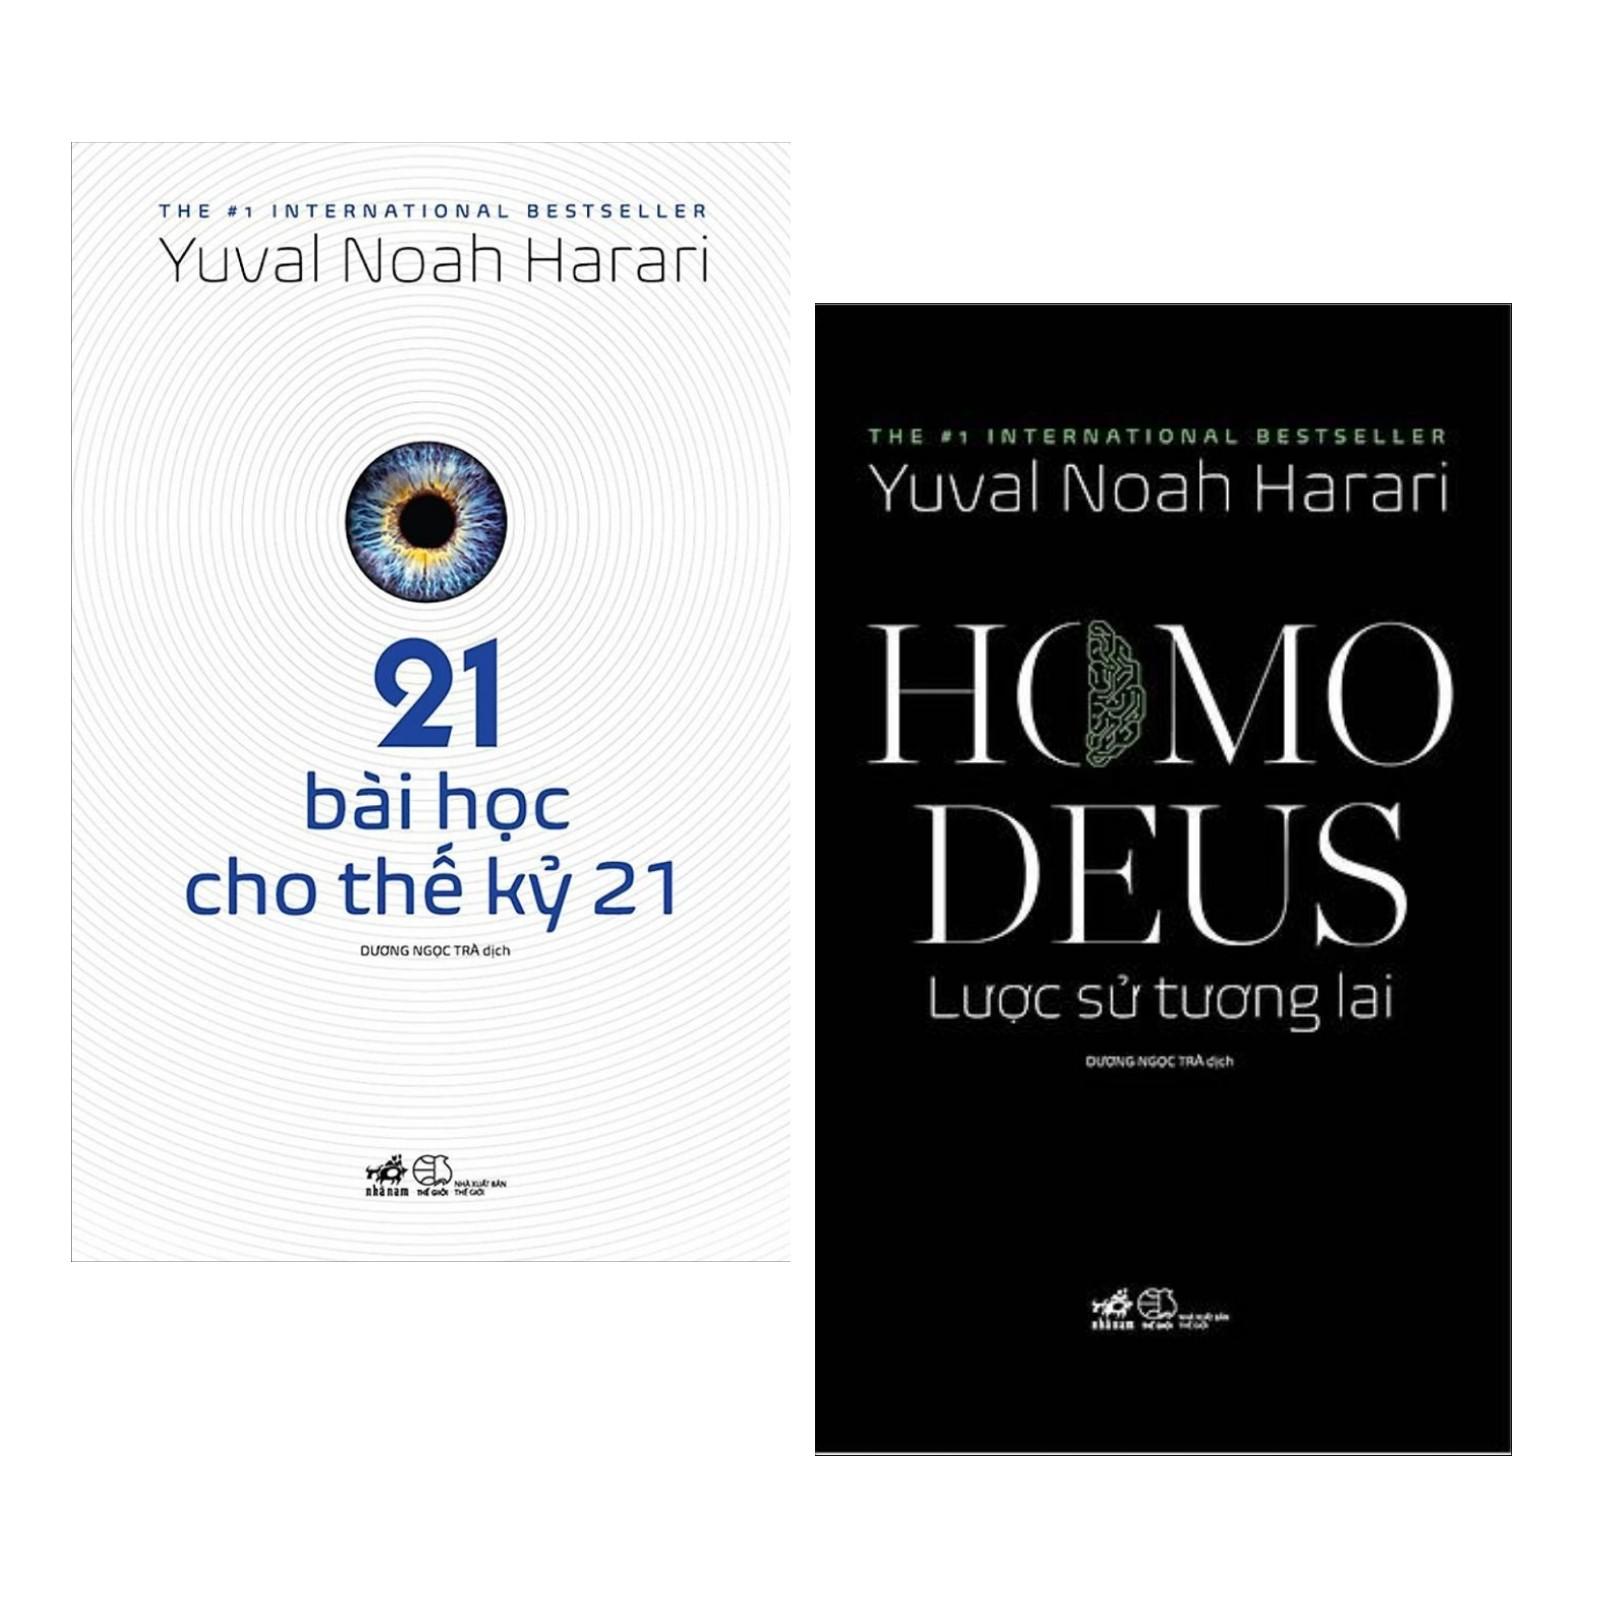 Sách - Combo Homo Deus Lược sử tương lai - 21 bài học cho thế kỷ 21 NN